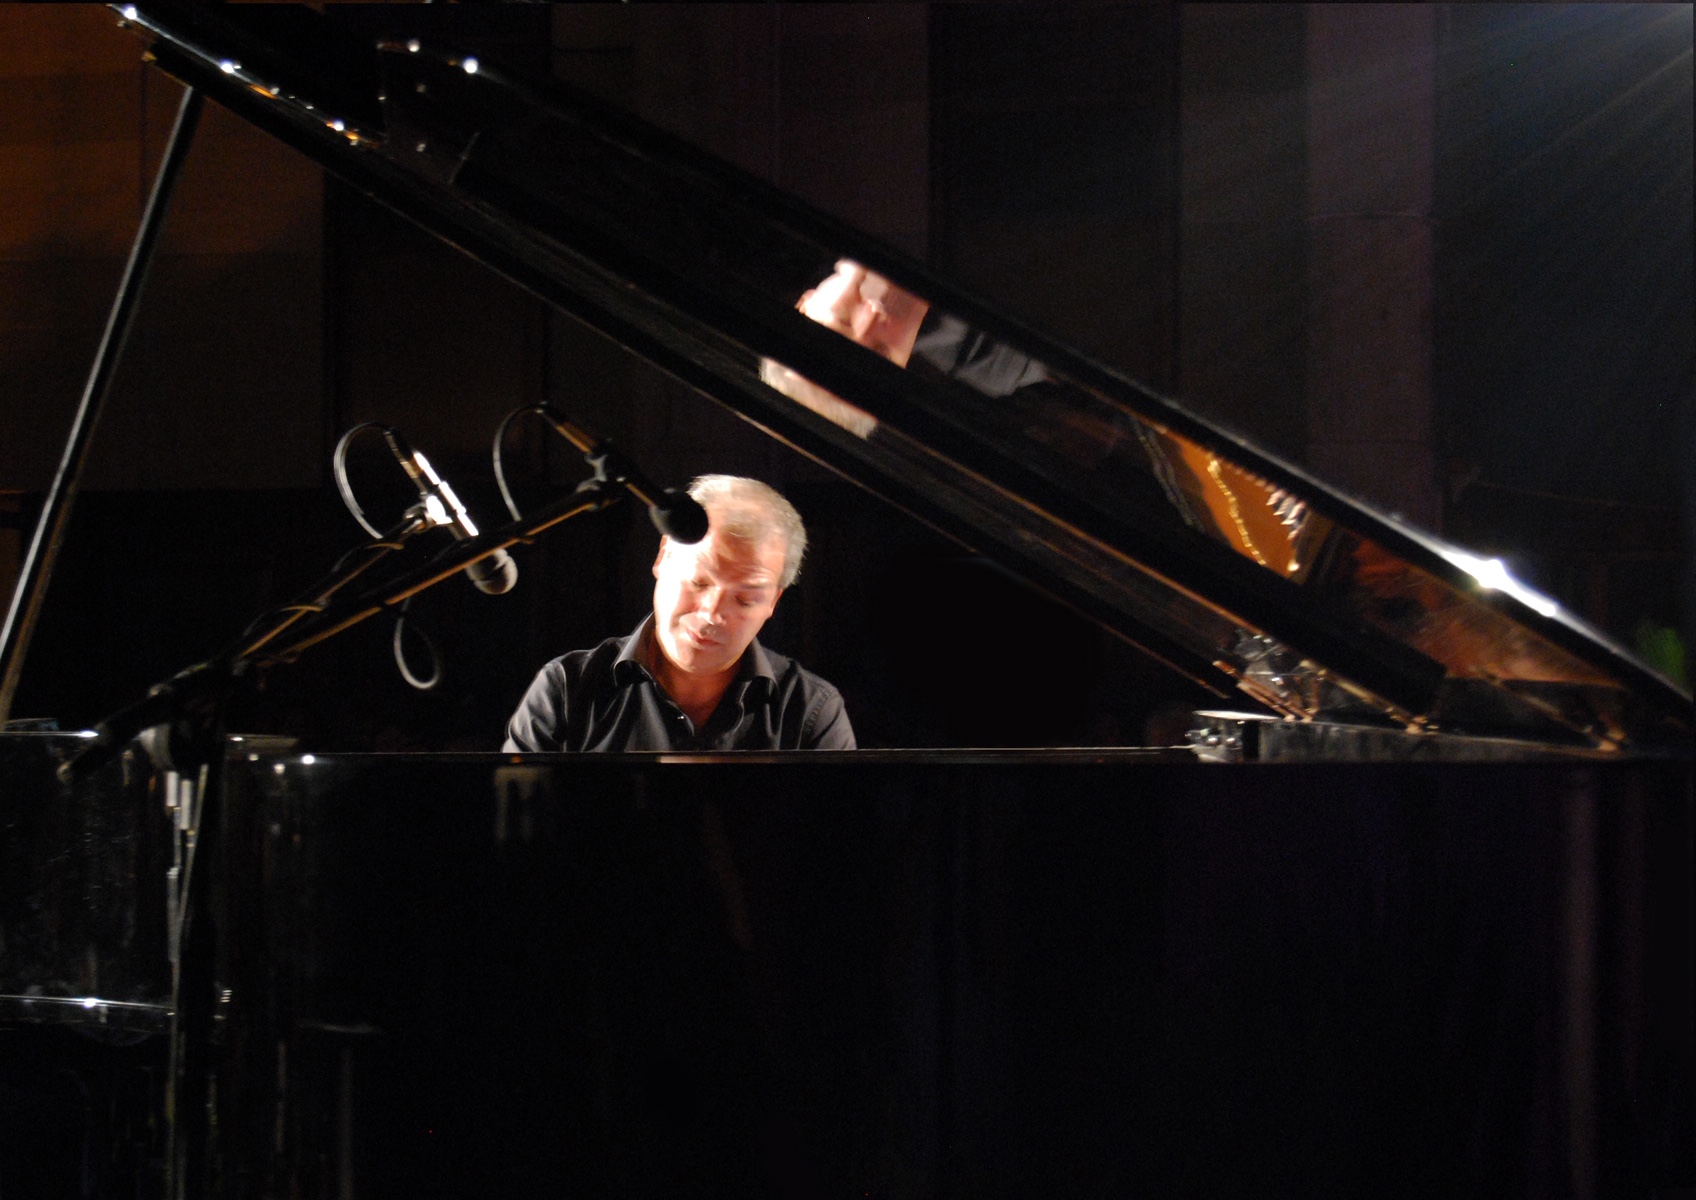 Piano City Napoli. Il grande pianista Enrico Fagnoni in concerto al Maschio Angioino. Venerdì 7 aprile